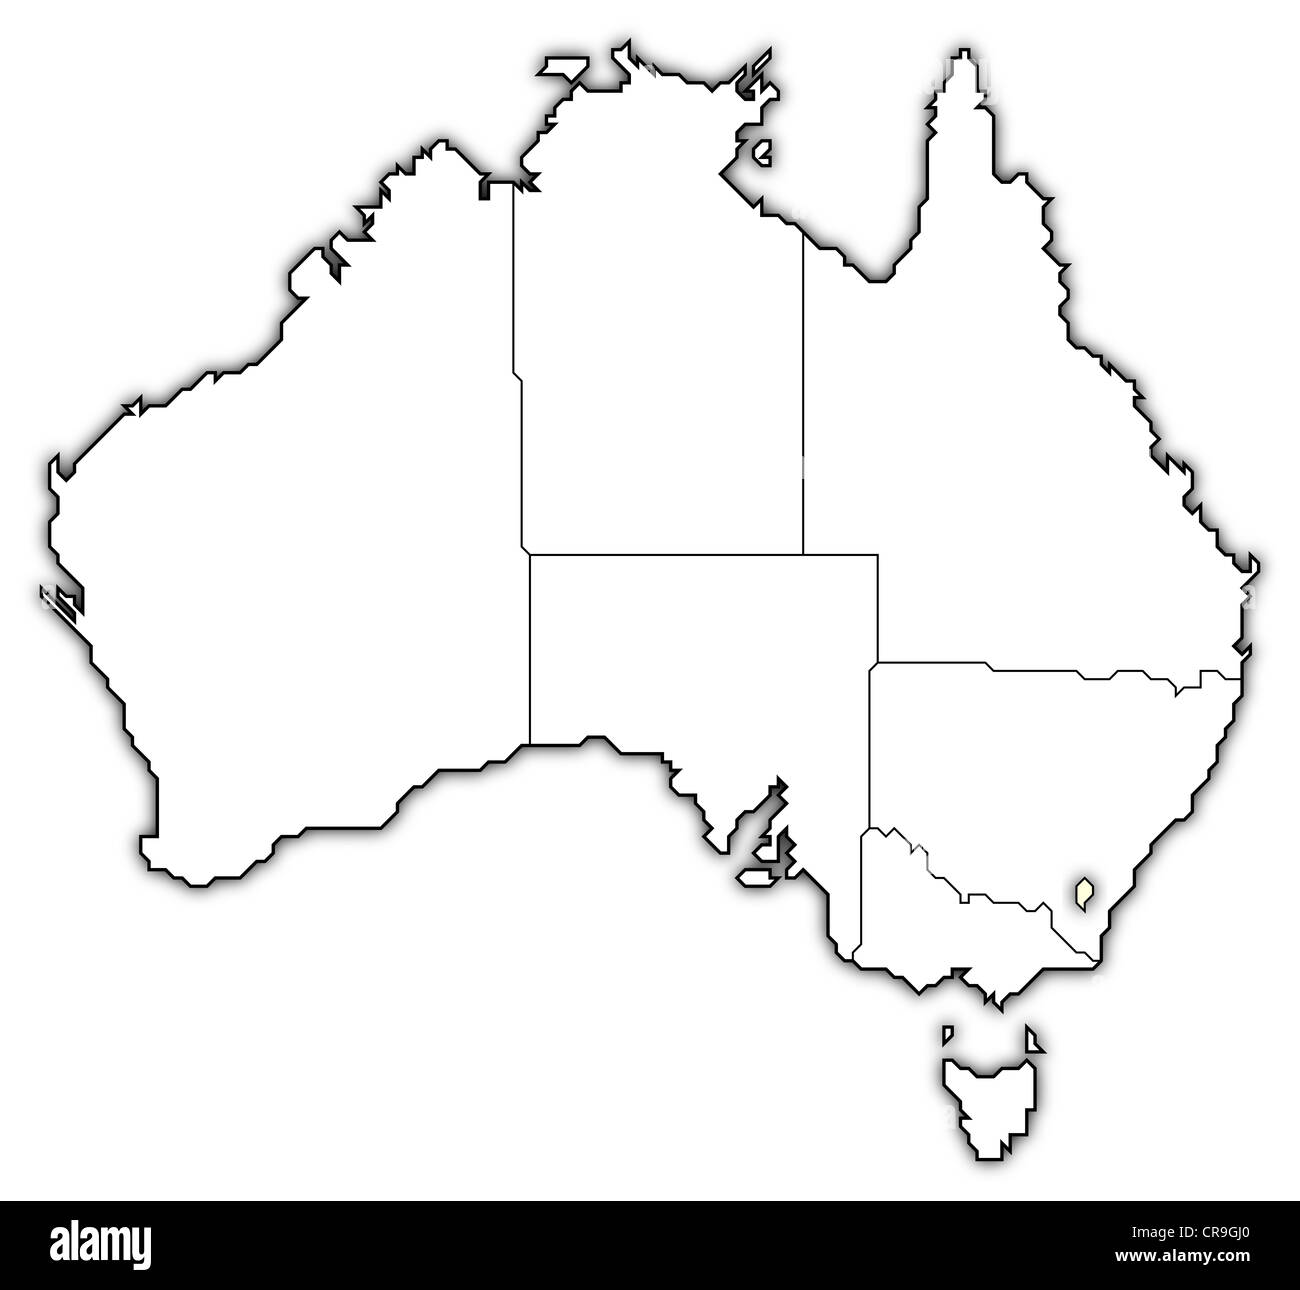 Carte politique de l'Australie avec le territoire de la capitale de plusieurs États où est mis en évidence. Banque D'Images